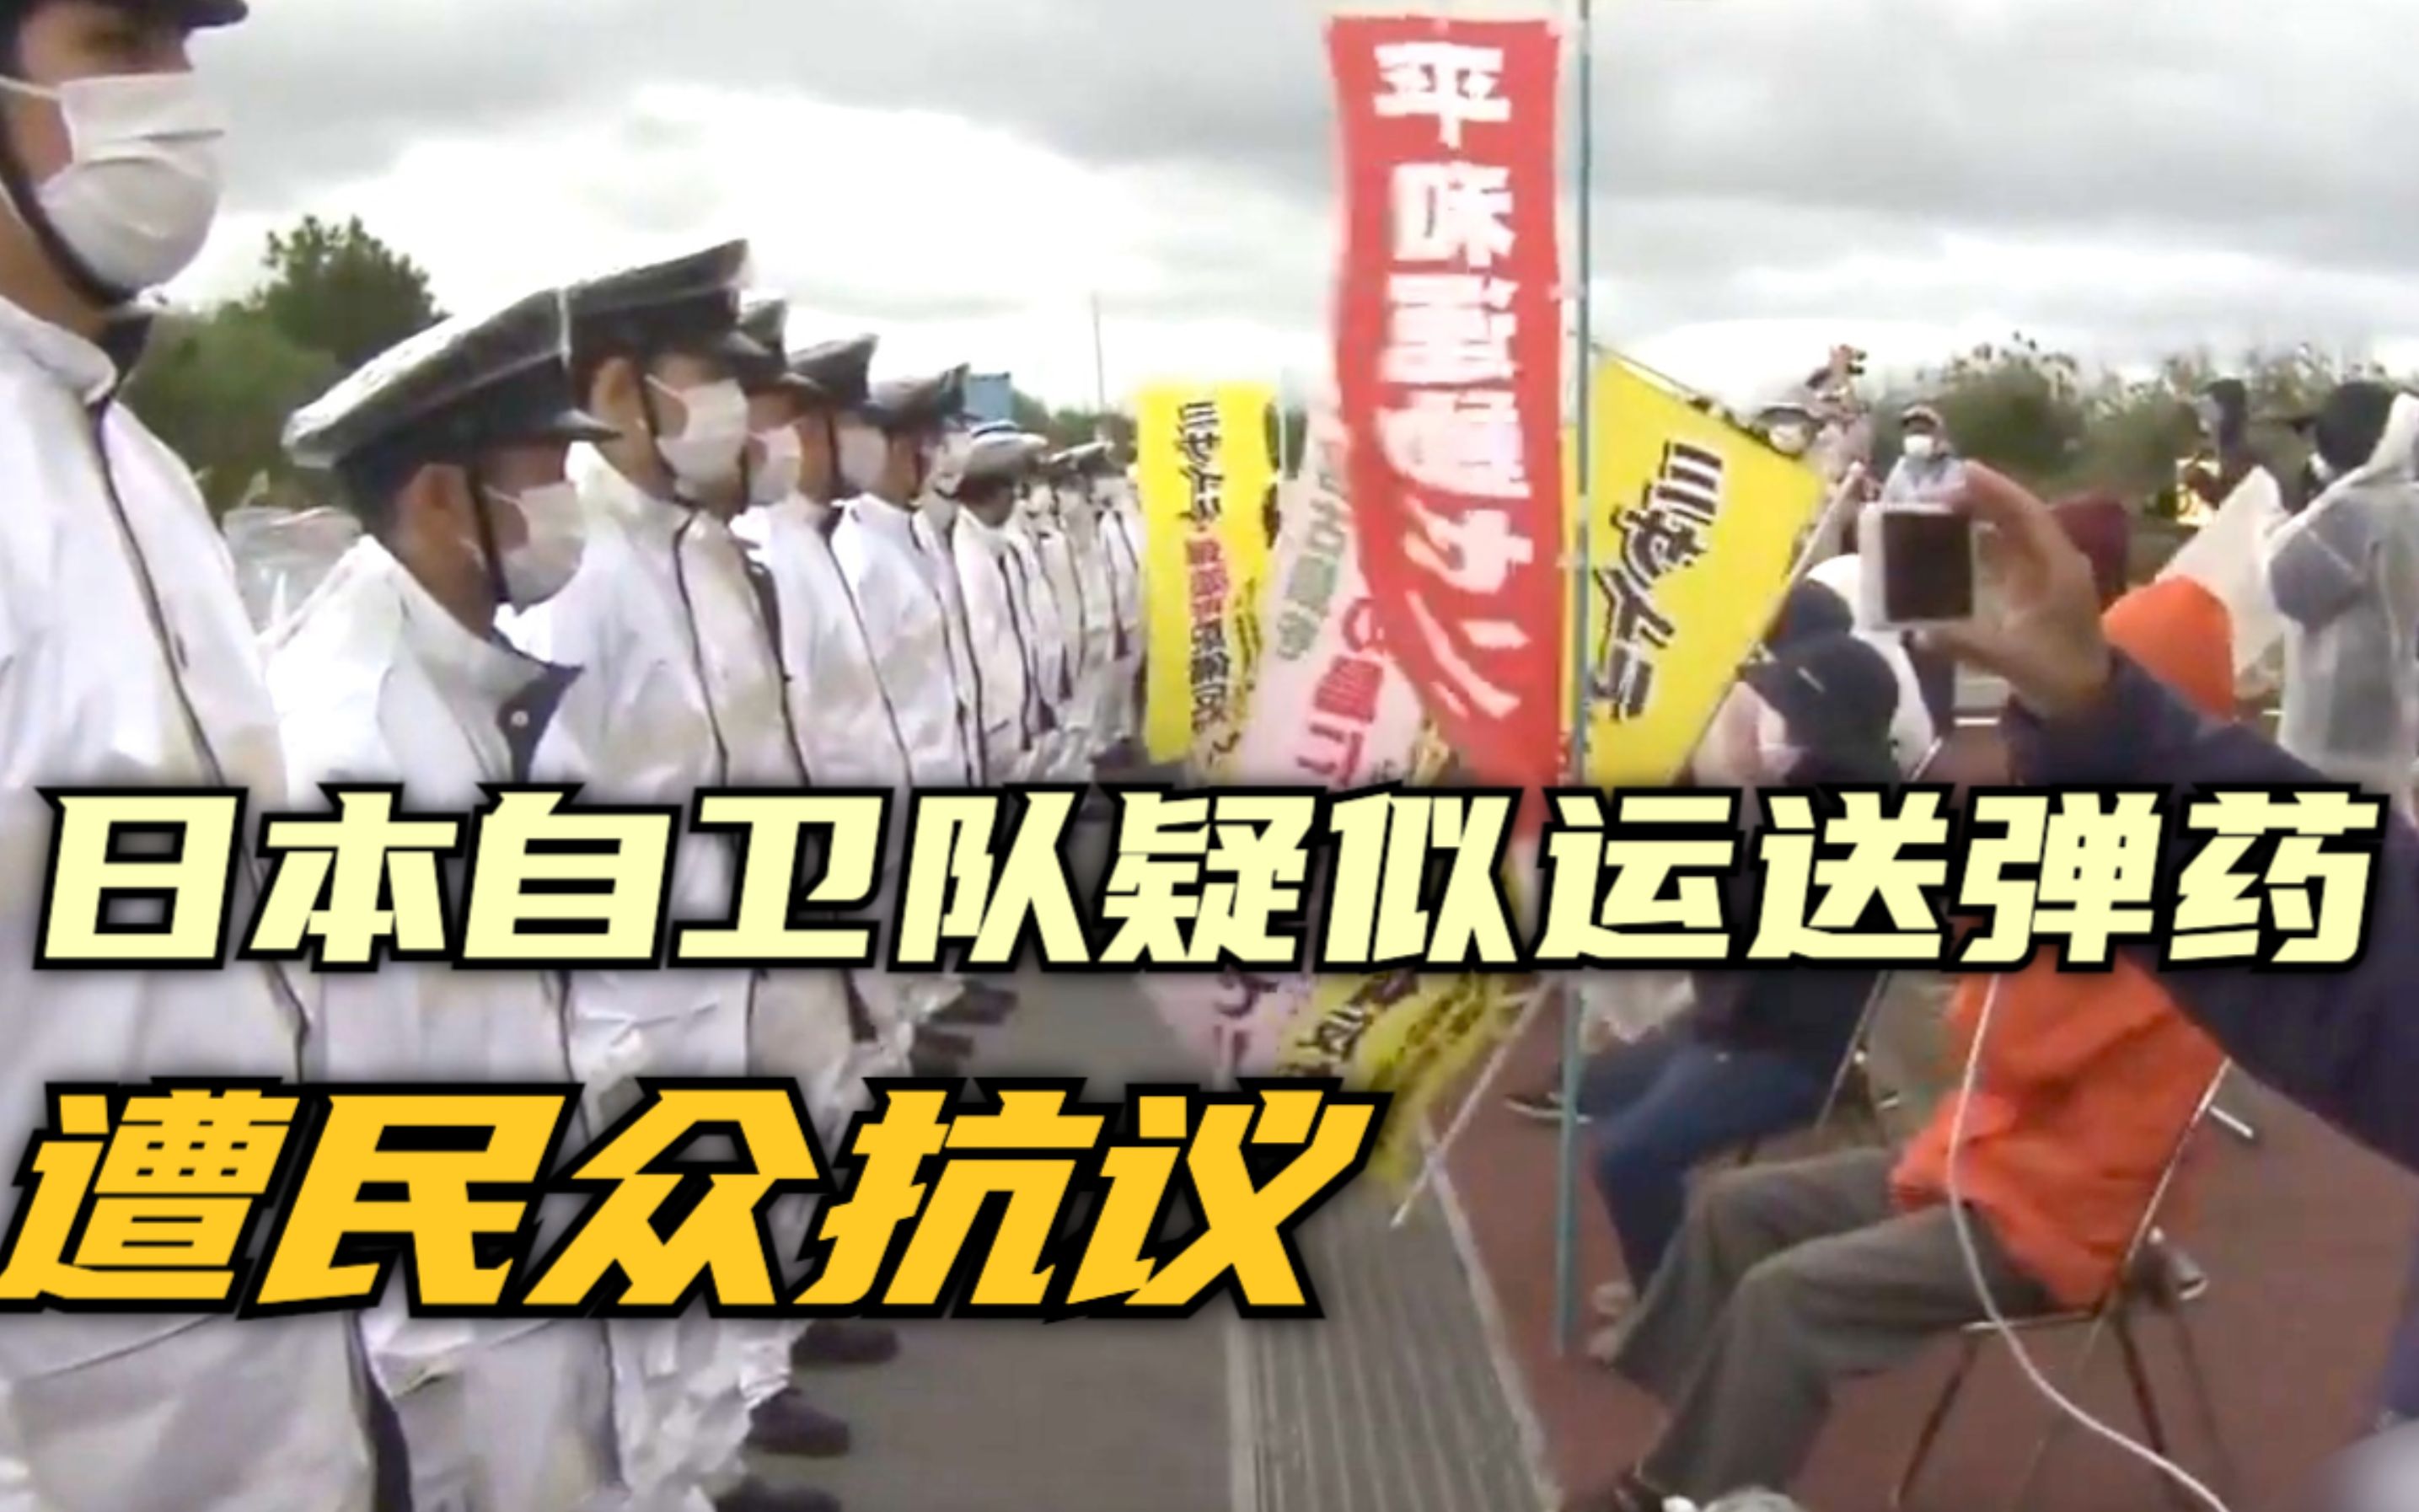 日本自卫队疑似运送弹药 遭民众抗议